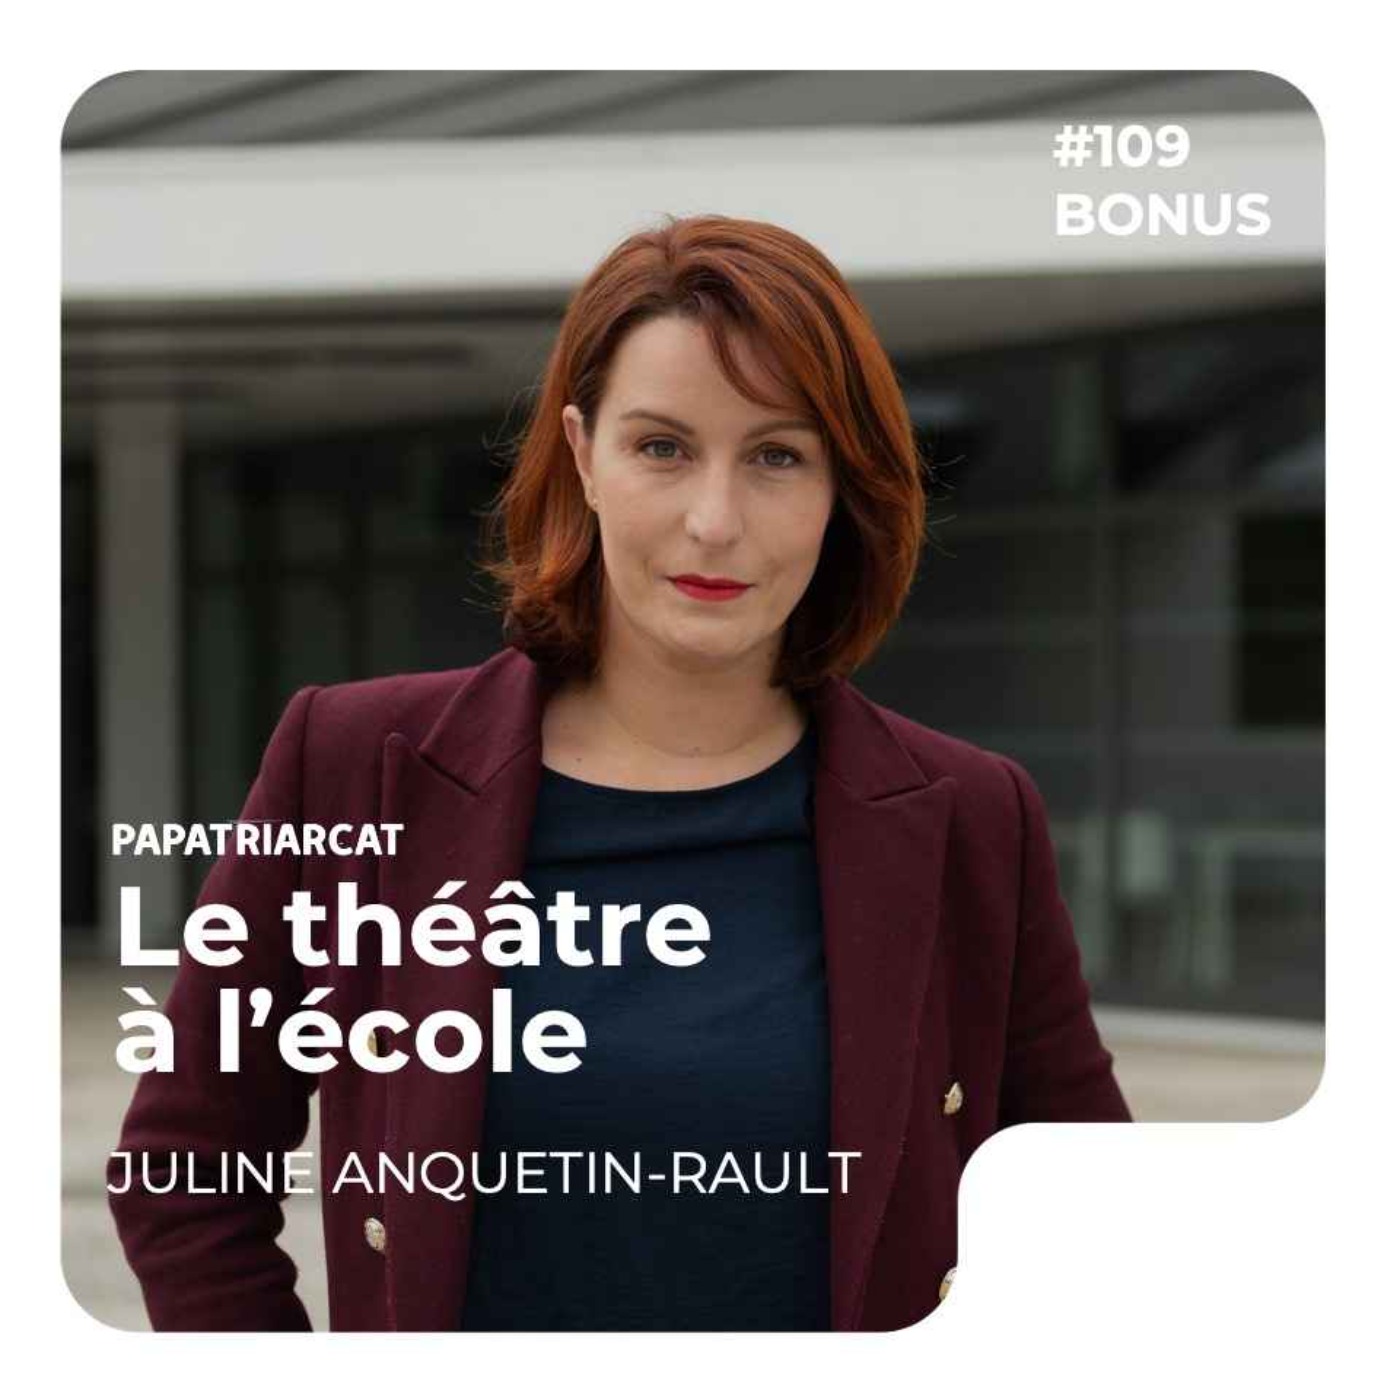 DÉCOUVERTE BONUS #109 - Le théâtre à l'école - Juline Anquetin-Rault